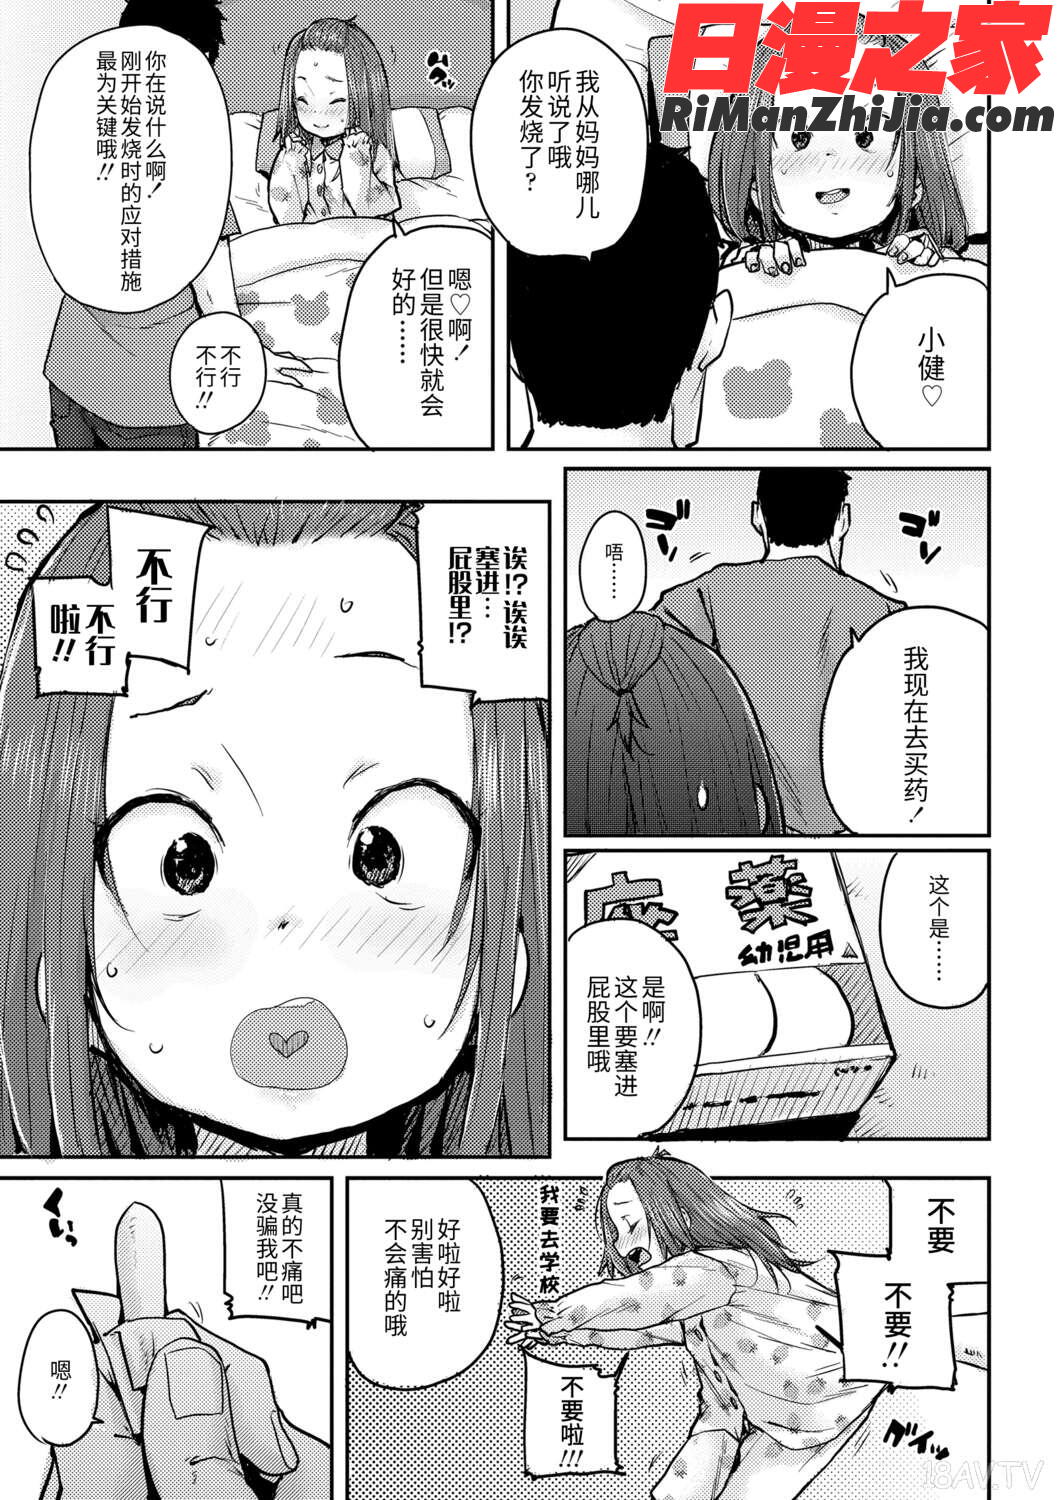 ちびっこエッチ(幼女性事)漫画 免费阅读 整部漫画 93.jpg